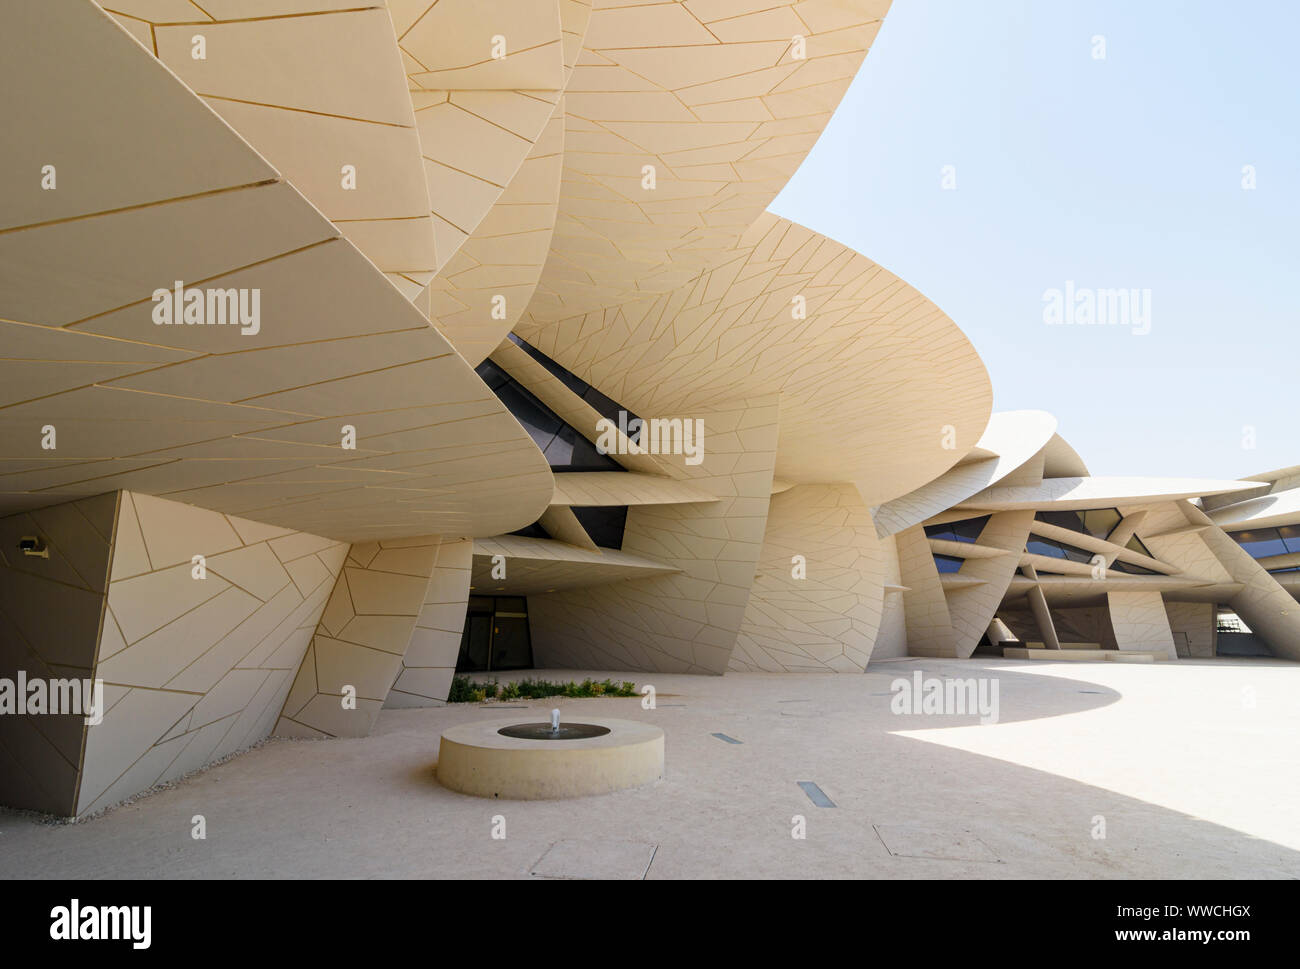 Das Desert Rose architektonische Wahrzeichen der nationalen Museum von Katar, Doha, Qatar inspiriert Stockfoto